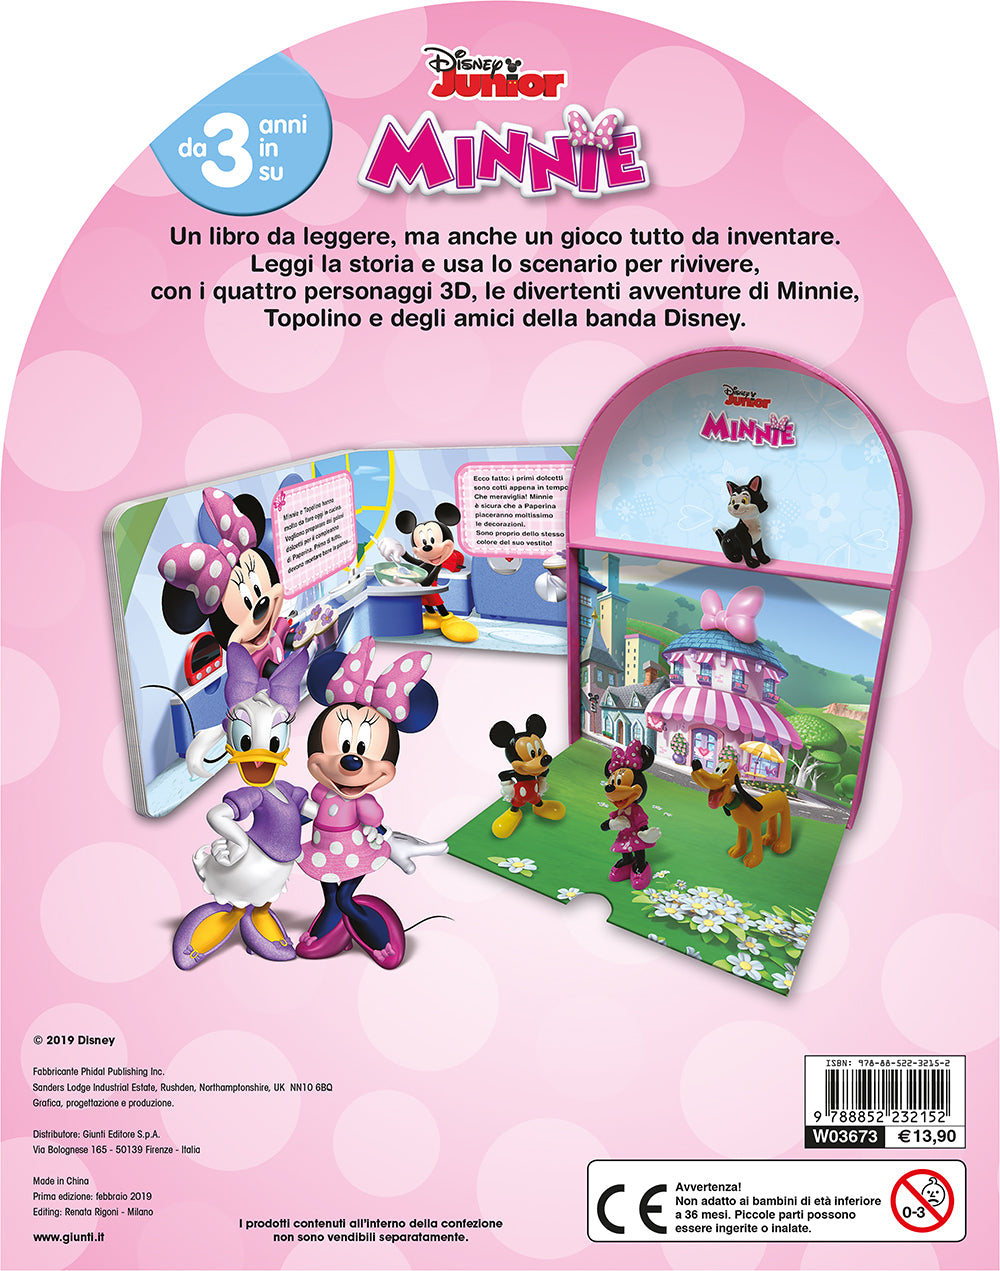 Minnie - LibroGiocaKit. Con 4 personaggi 3D e 1 scenario per giocare!